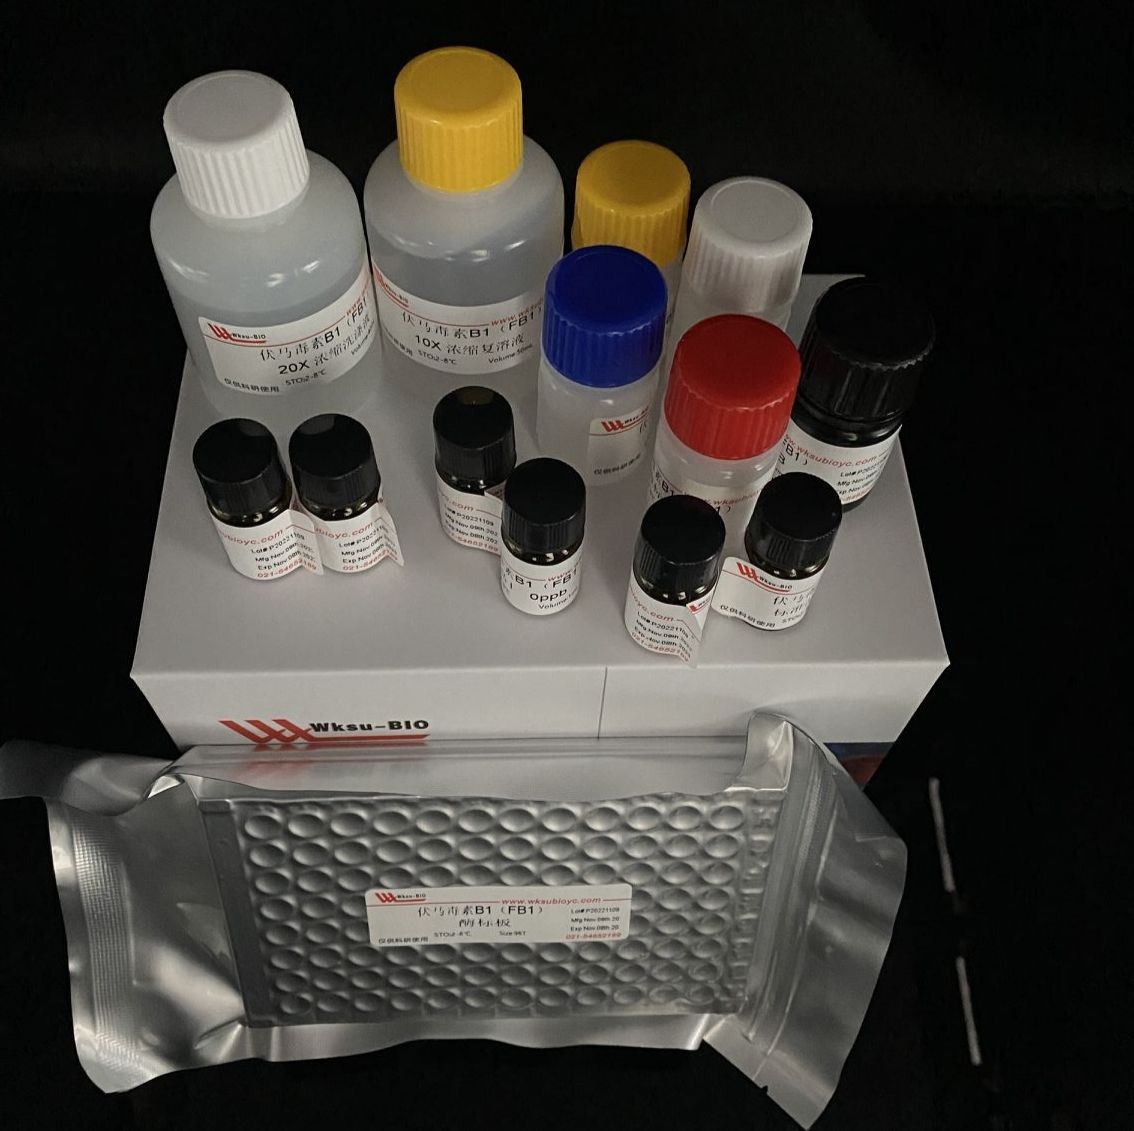 6-磷酸葡萄糖酸脱氢酶(6PGDH)试剂盒,微板法